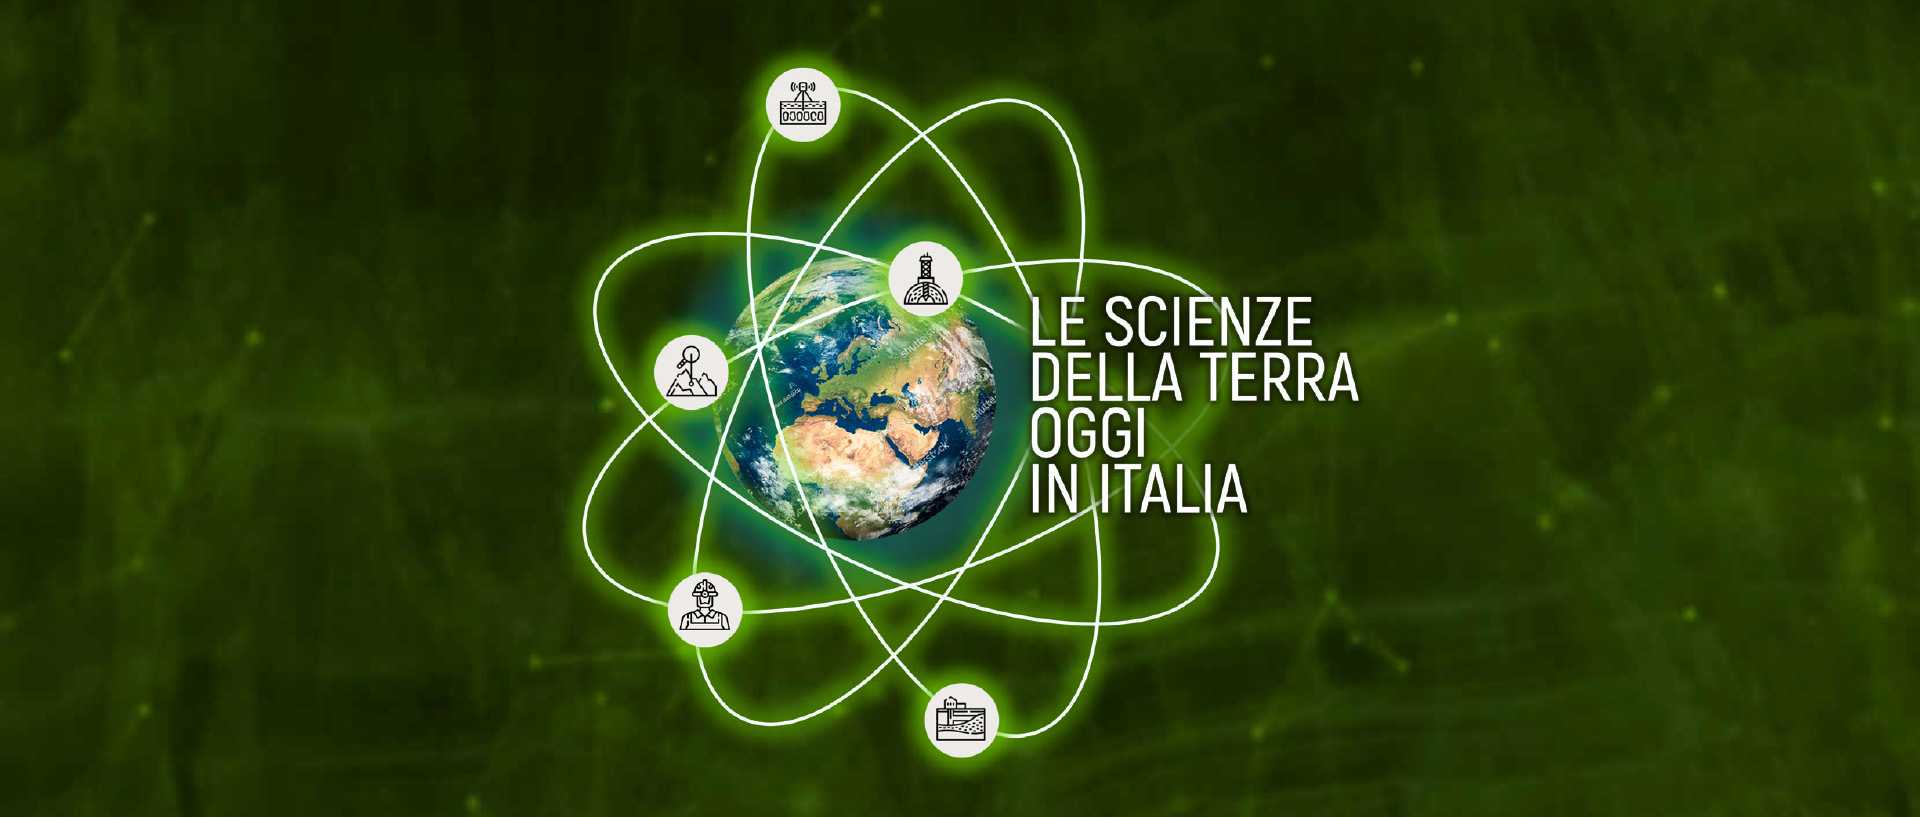 scienze terra oggi italia header